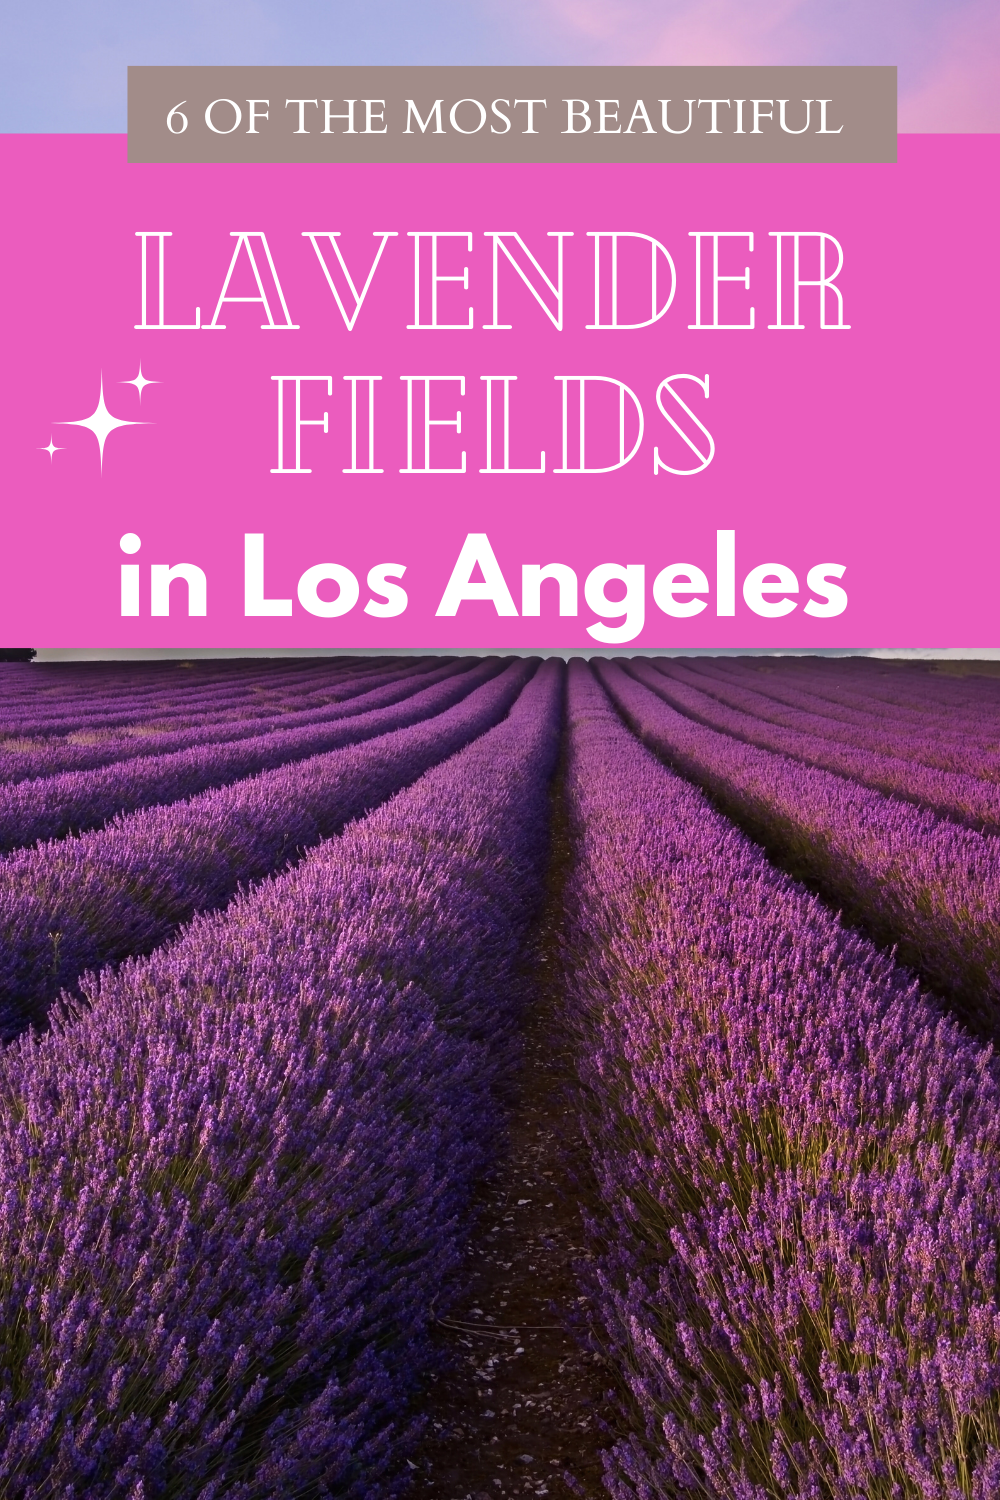 Lavender Farms near LA